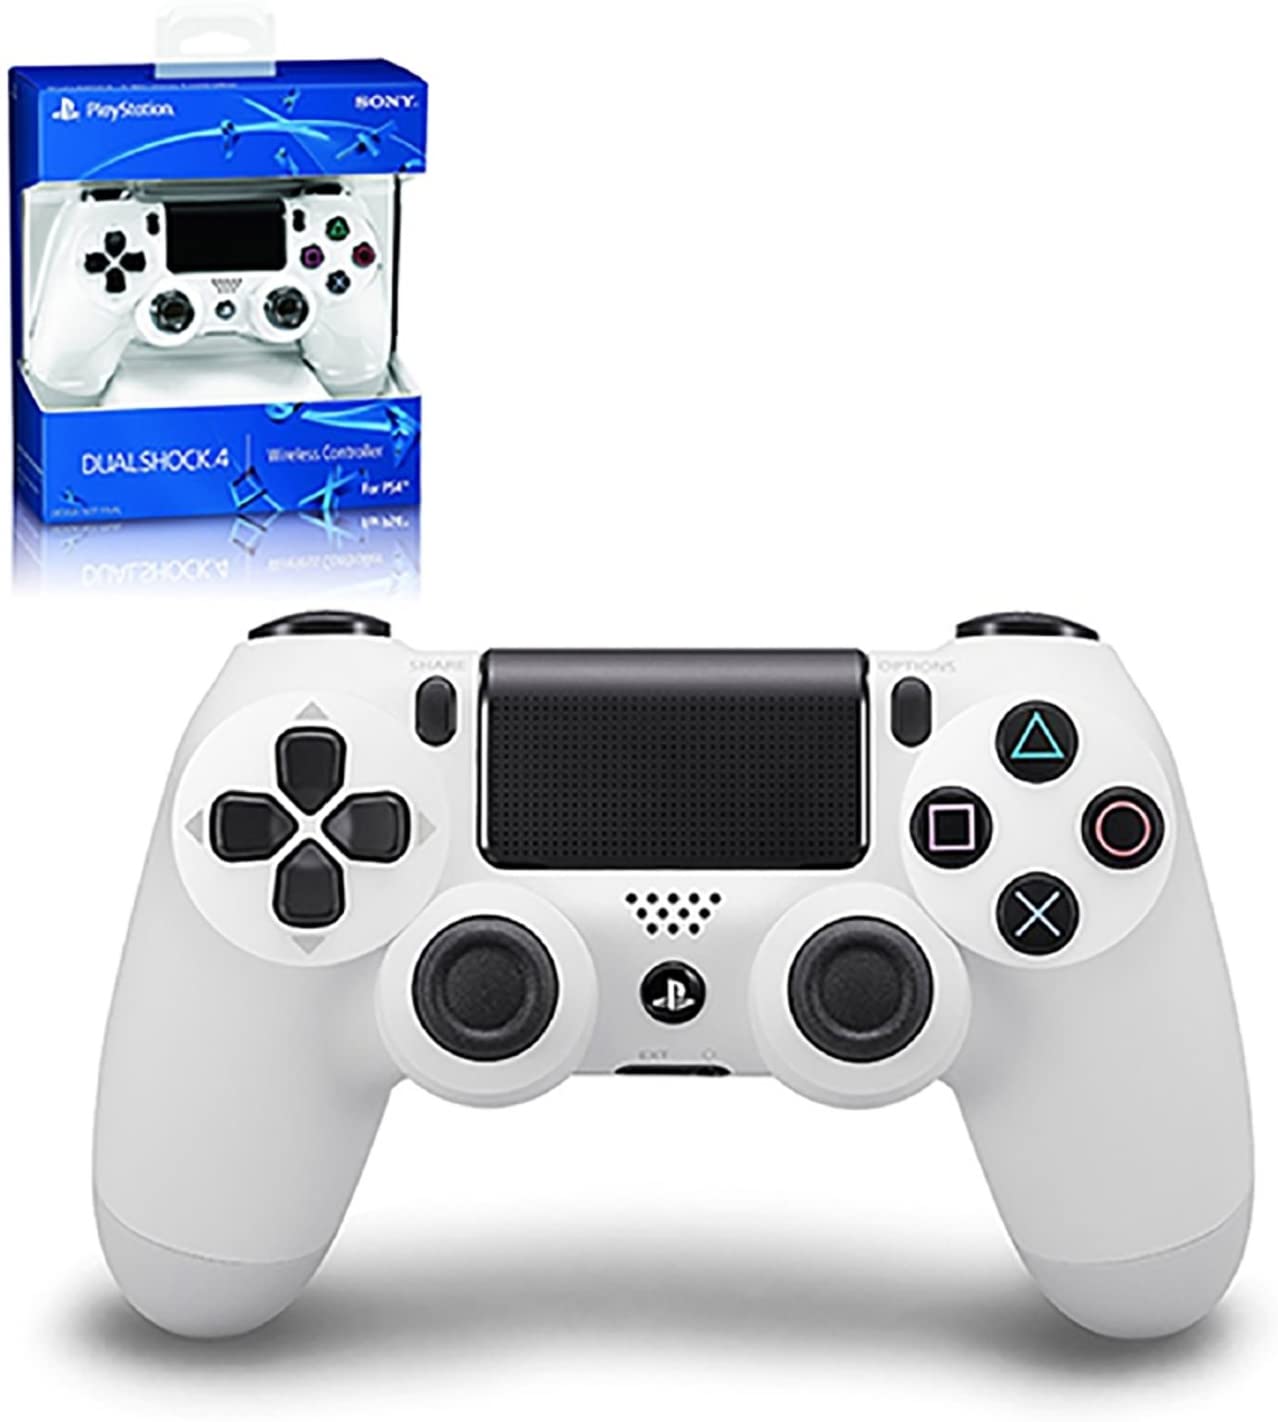 PS4 DS4 CONTROLLER - Glacier White